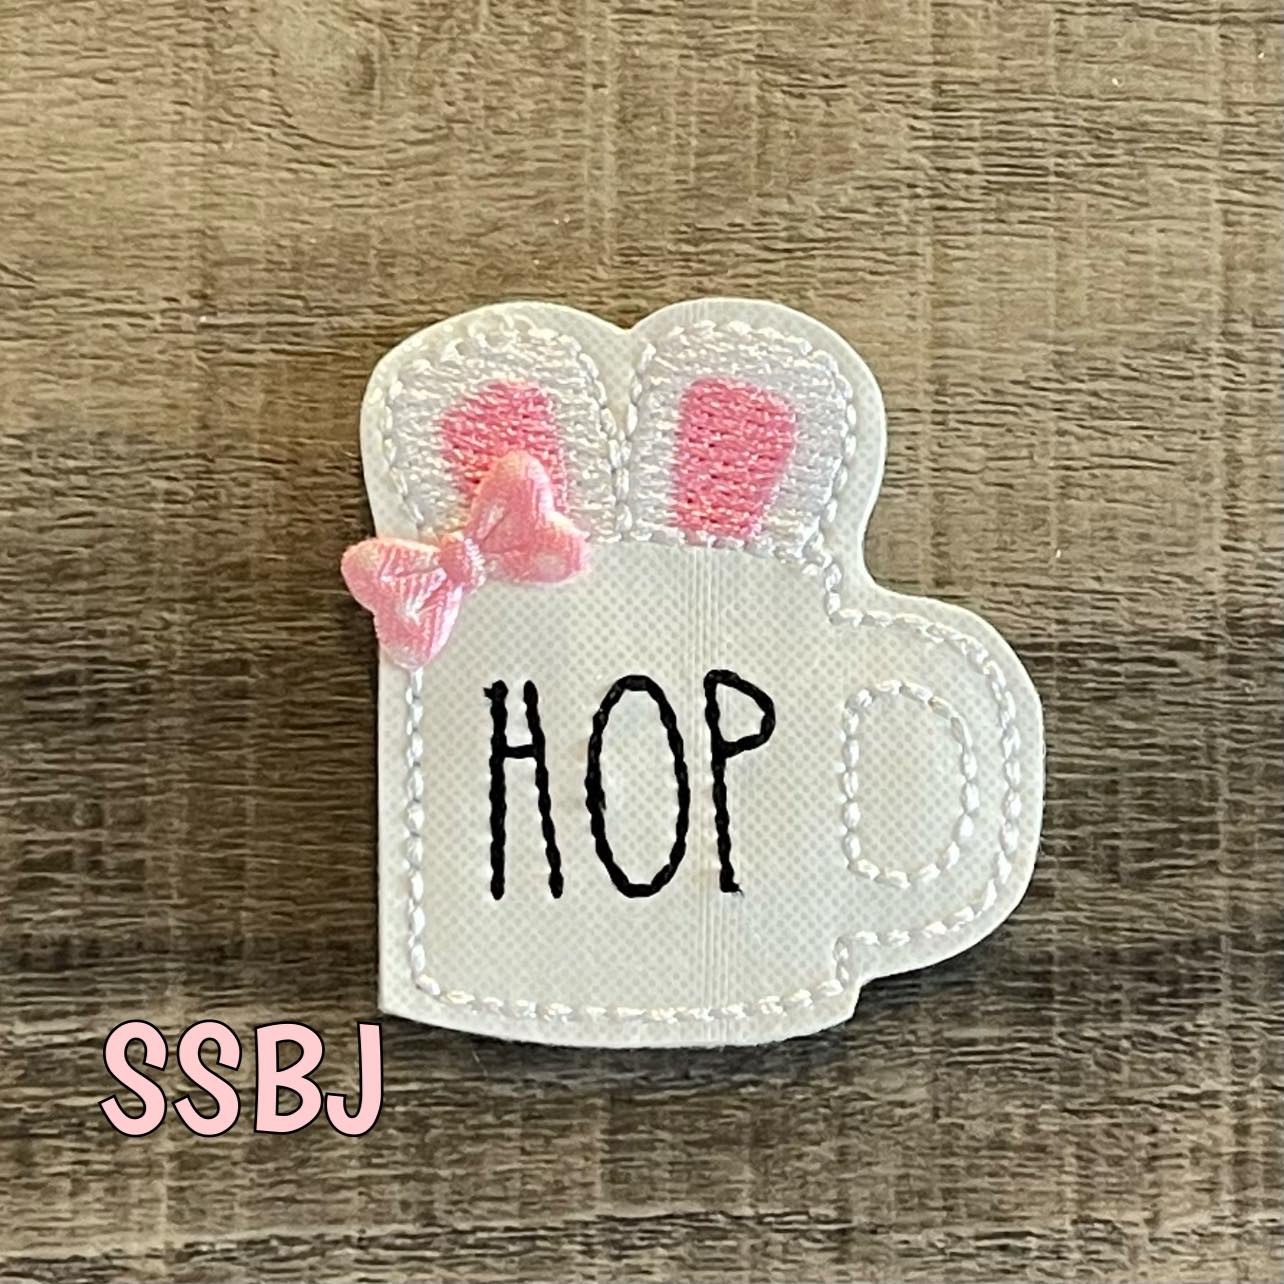 SSBJ HOP Mug Bunny Ears Embroidery File